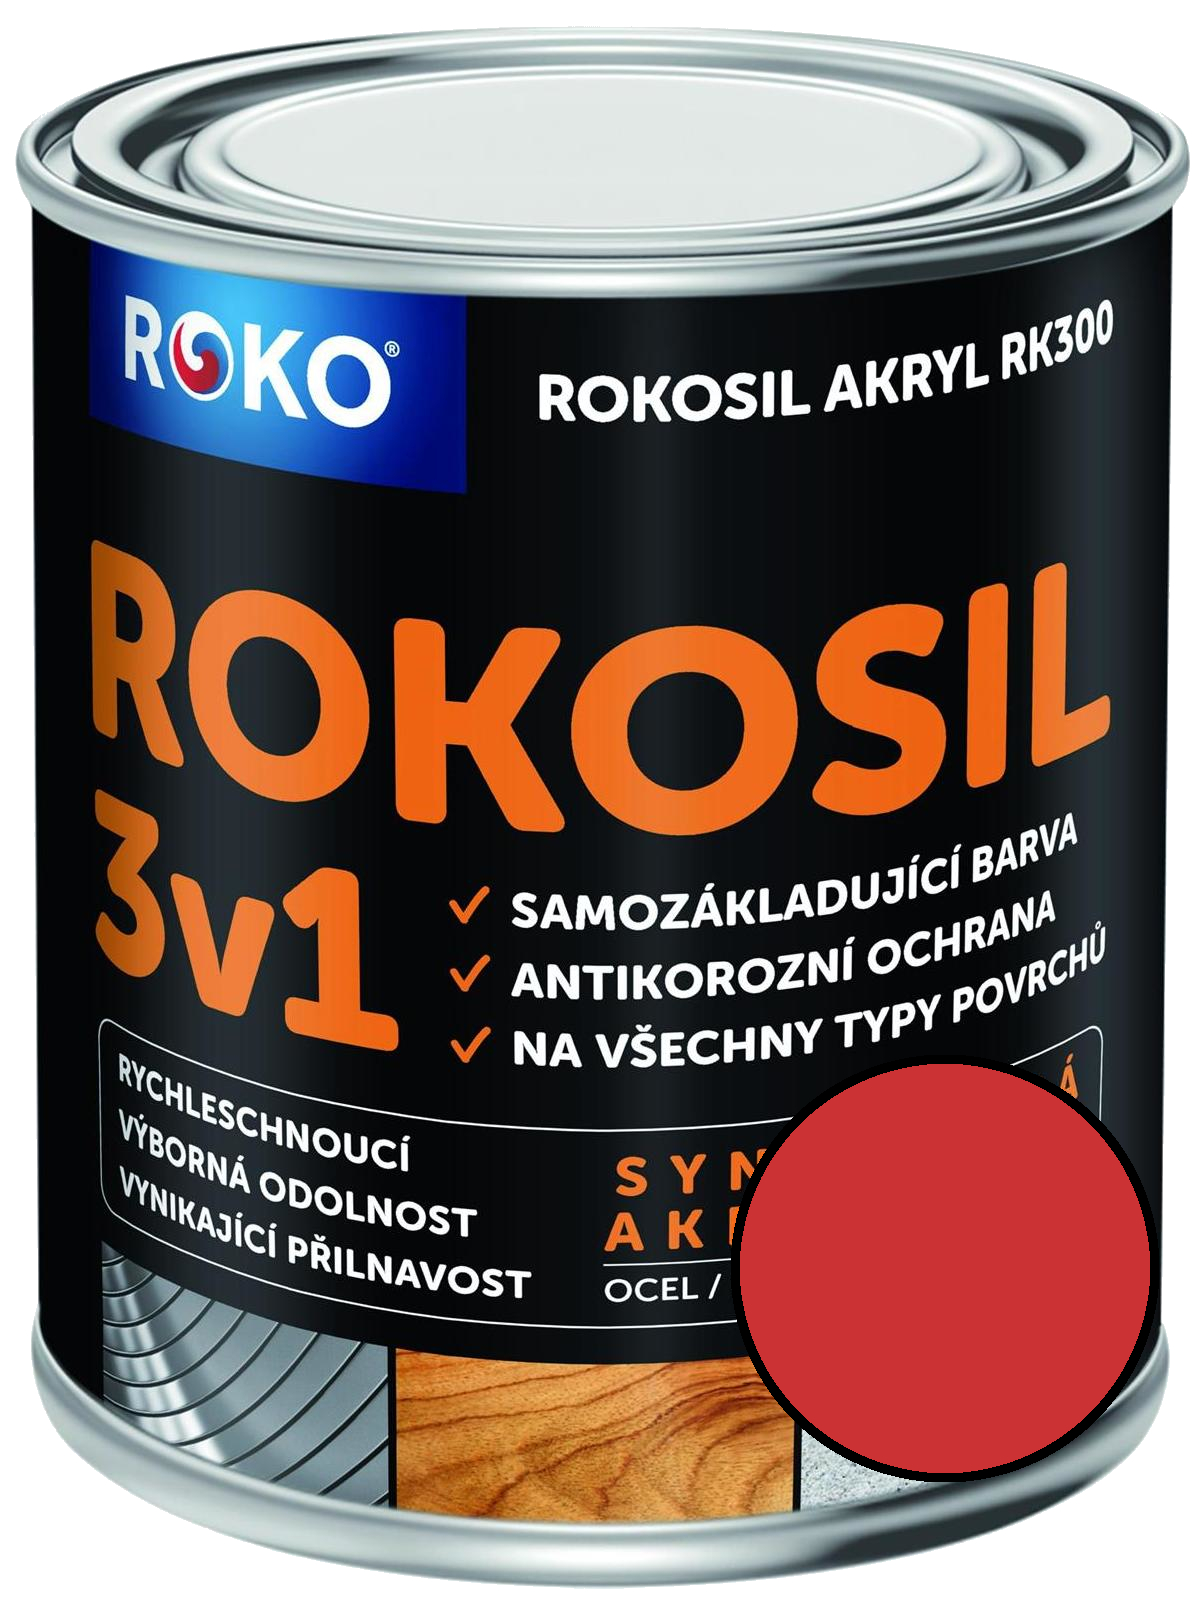 Barva samozákladující Rokosil akryl 3v1 RK 300 8140 červená světlá, 3 l